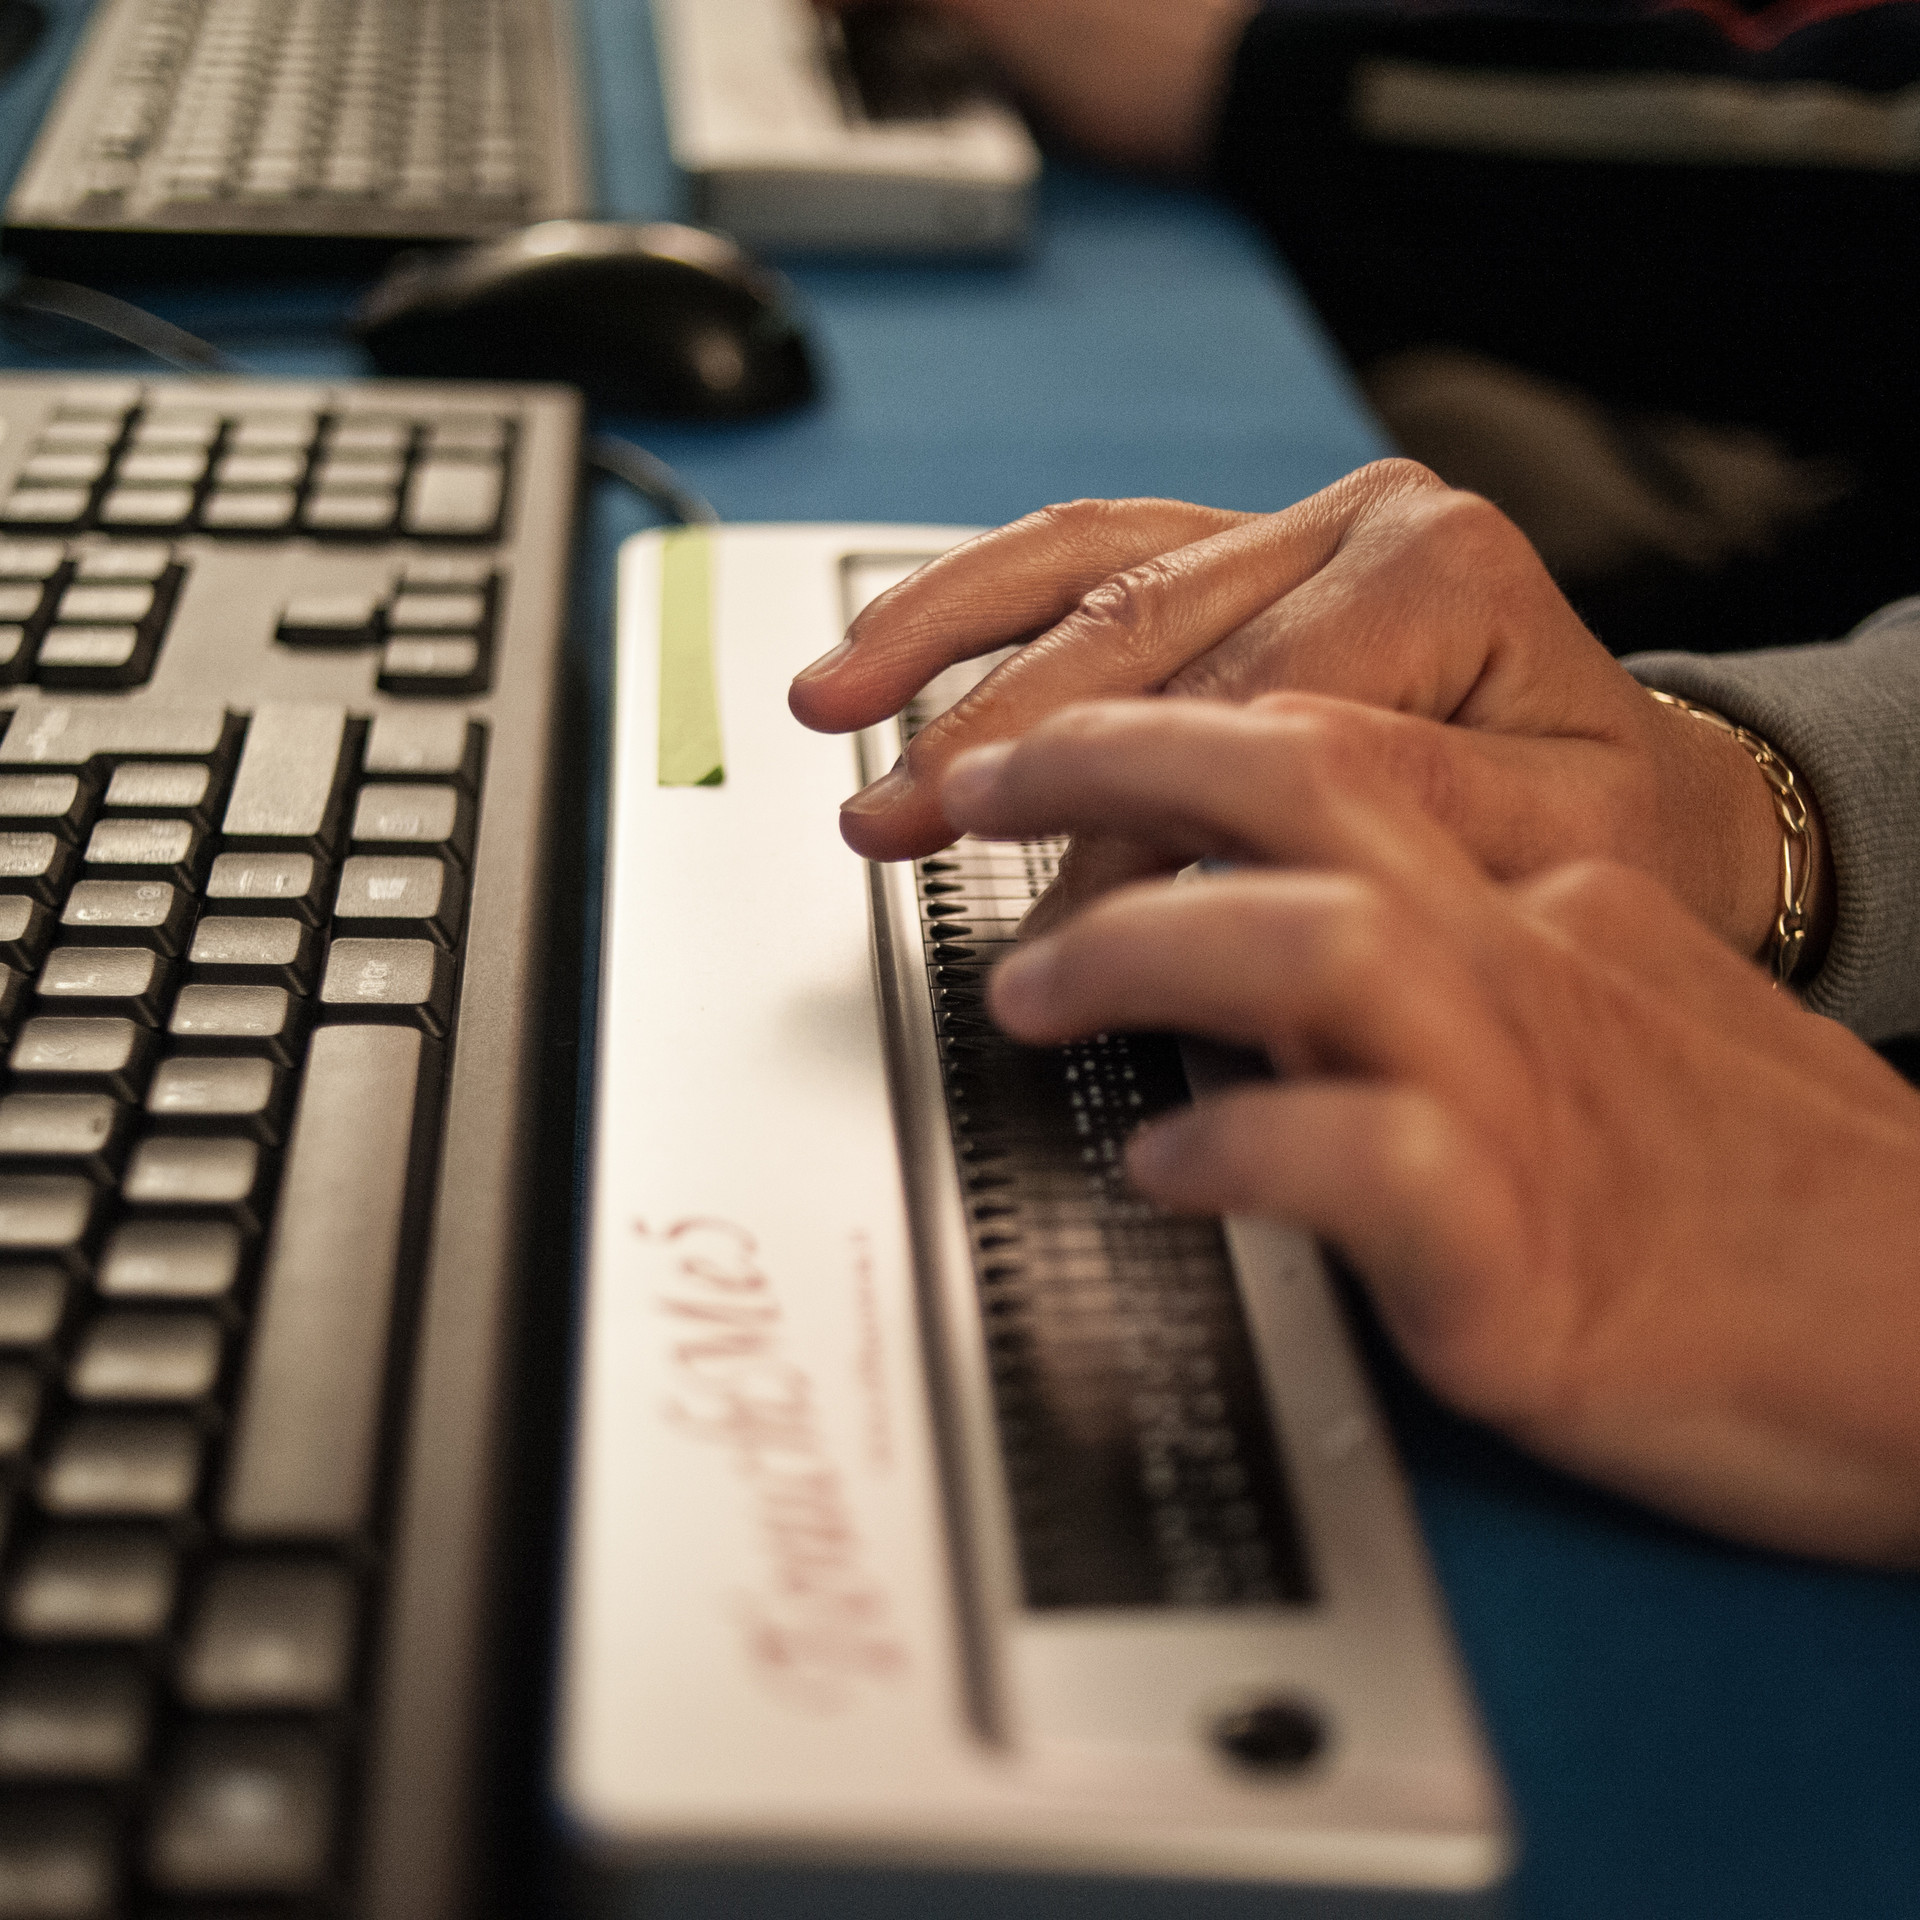 Anche le persone sordocieche possono usare il computer, sfruttando le potenzialità offerte da applicazioni software quali il “sintetizzatore vocale” o la “barra braille”.